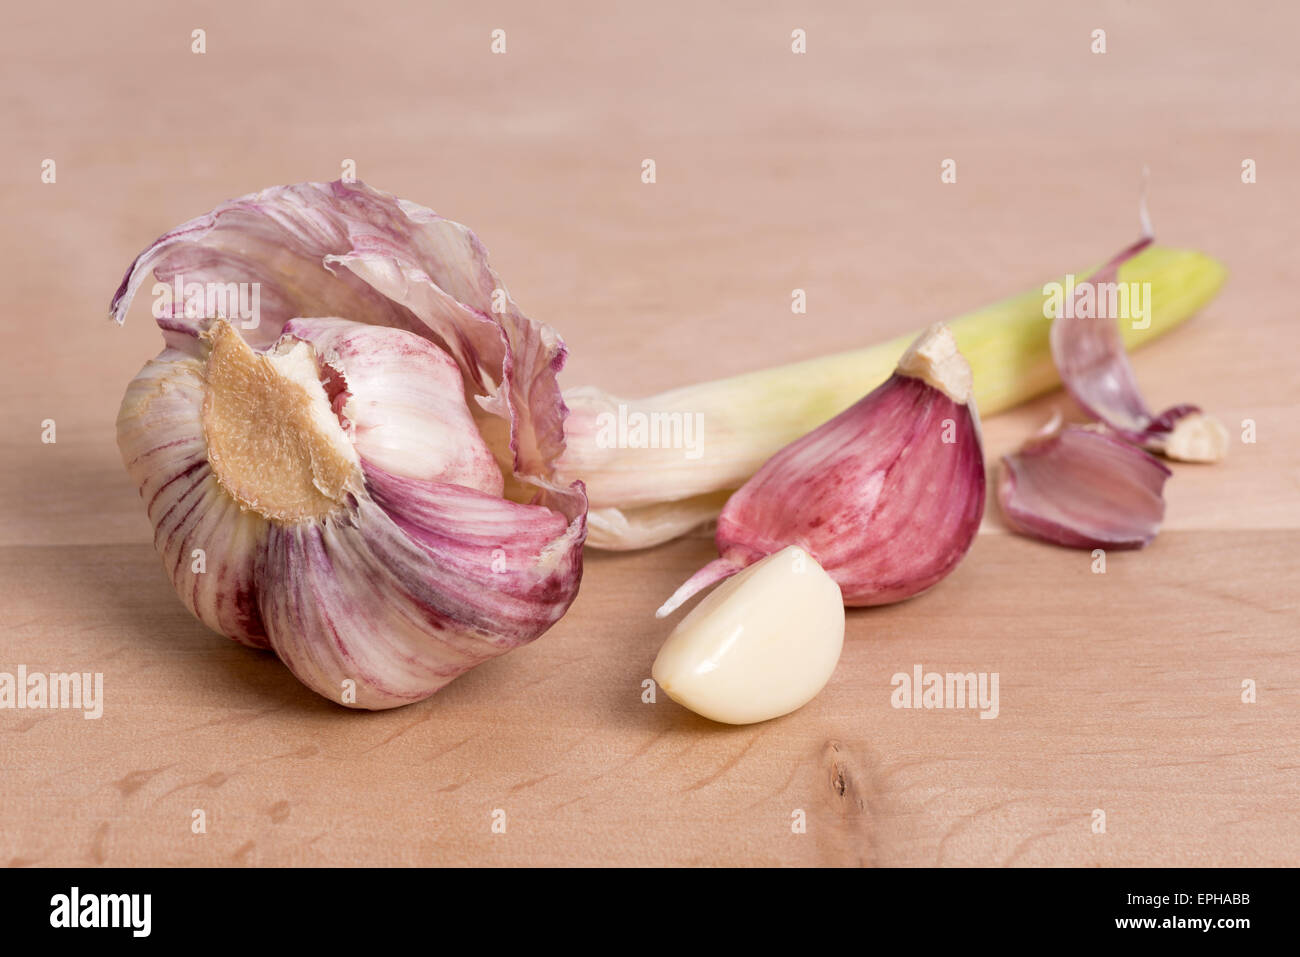 Aglio - chiodo di garofano e la testa di aglio su una tavola di legno Foto Stock